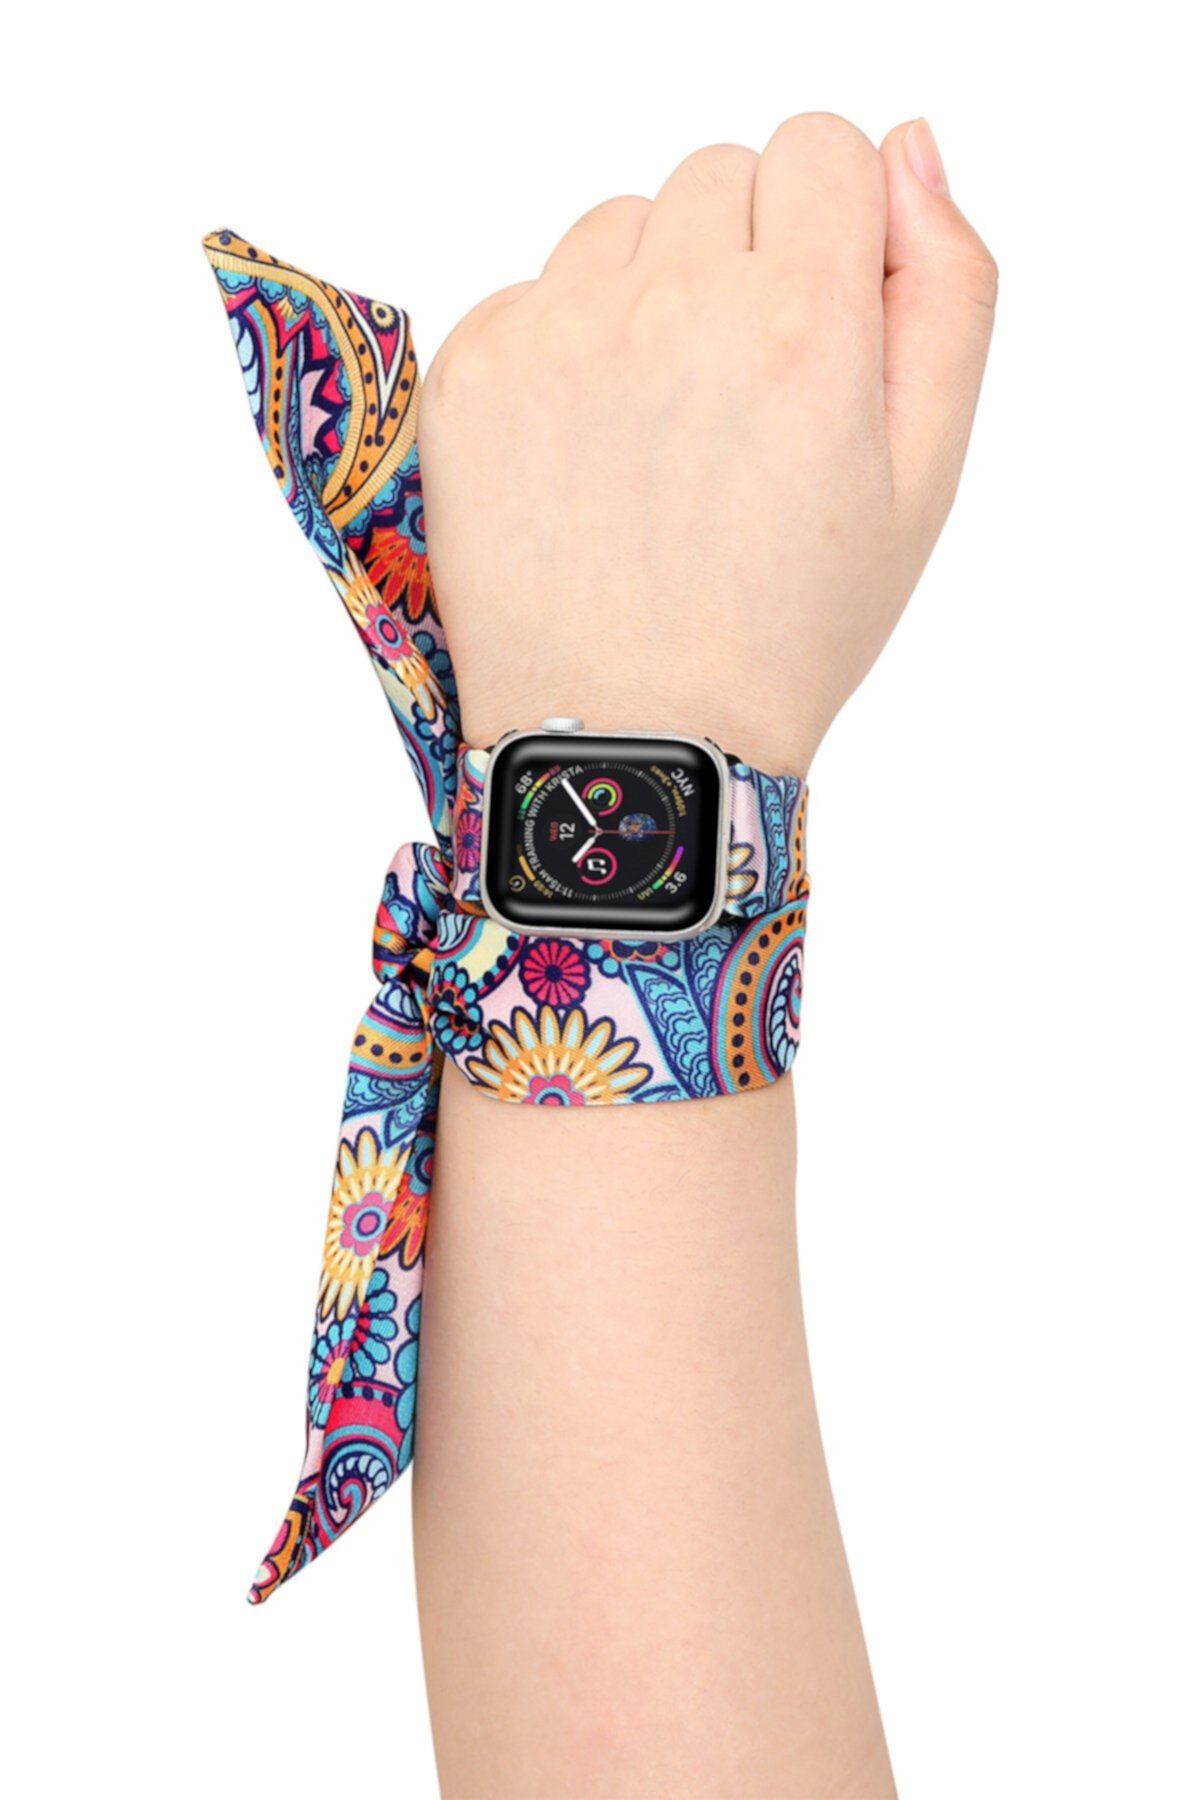 Фиолетовый шелковый шарф с узором пейсли 42 мм / 44 мм Apple Watch 1/2/3/4 ремешок POSH TECH